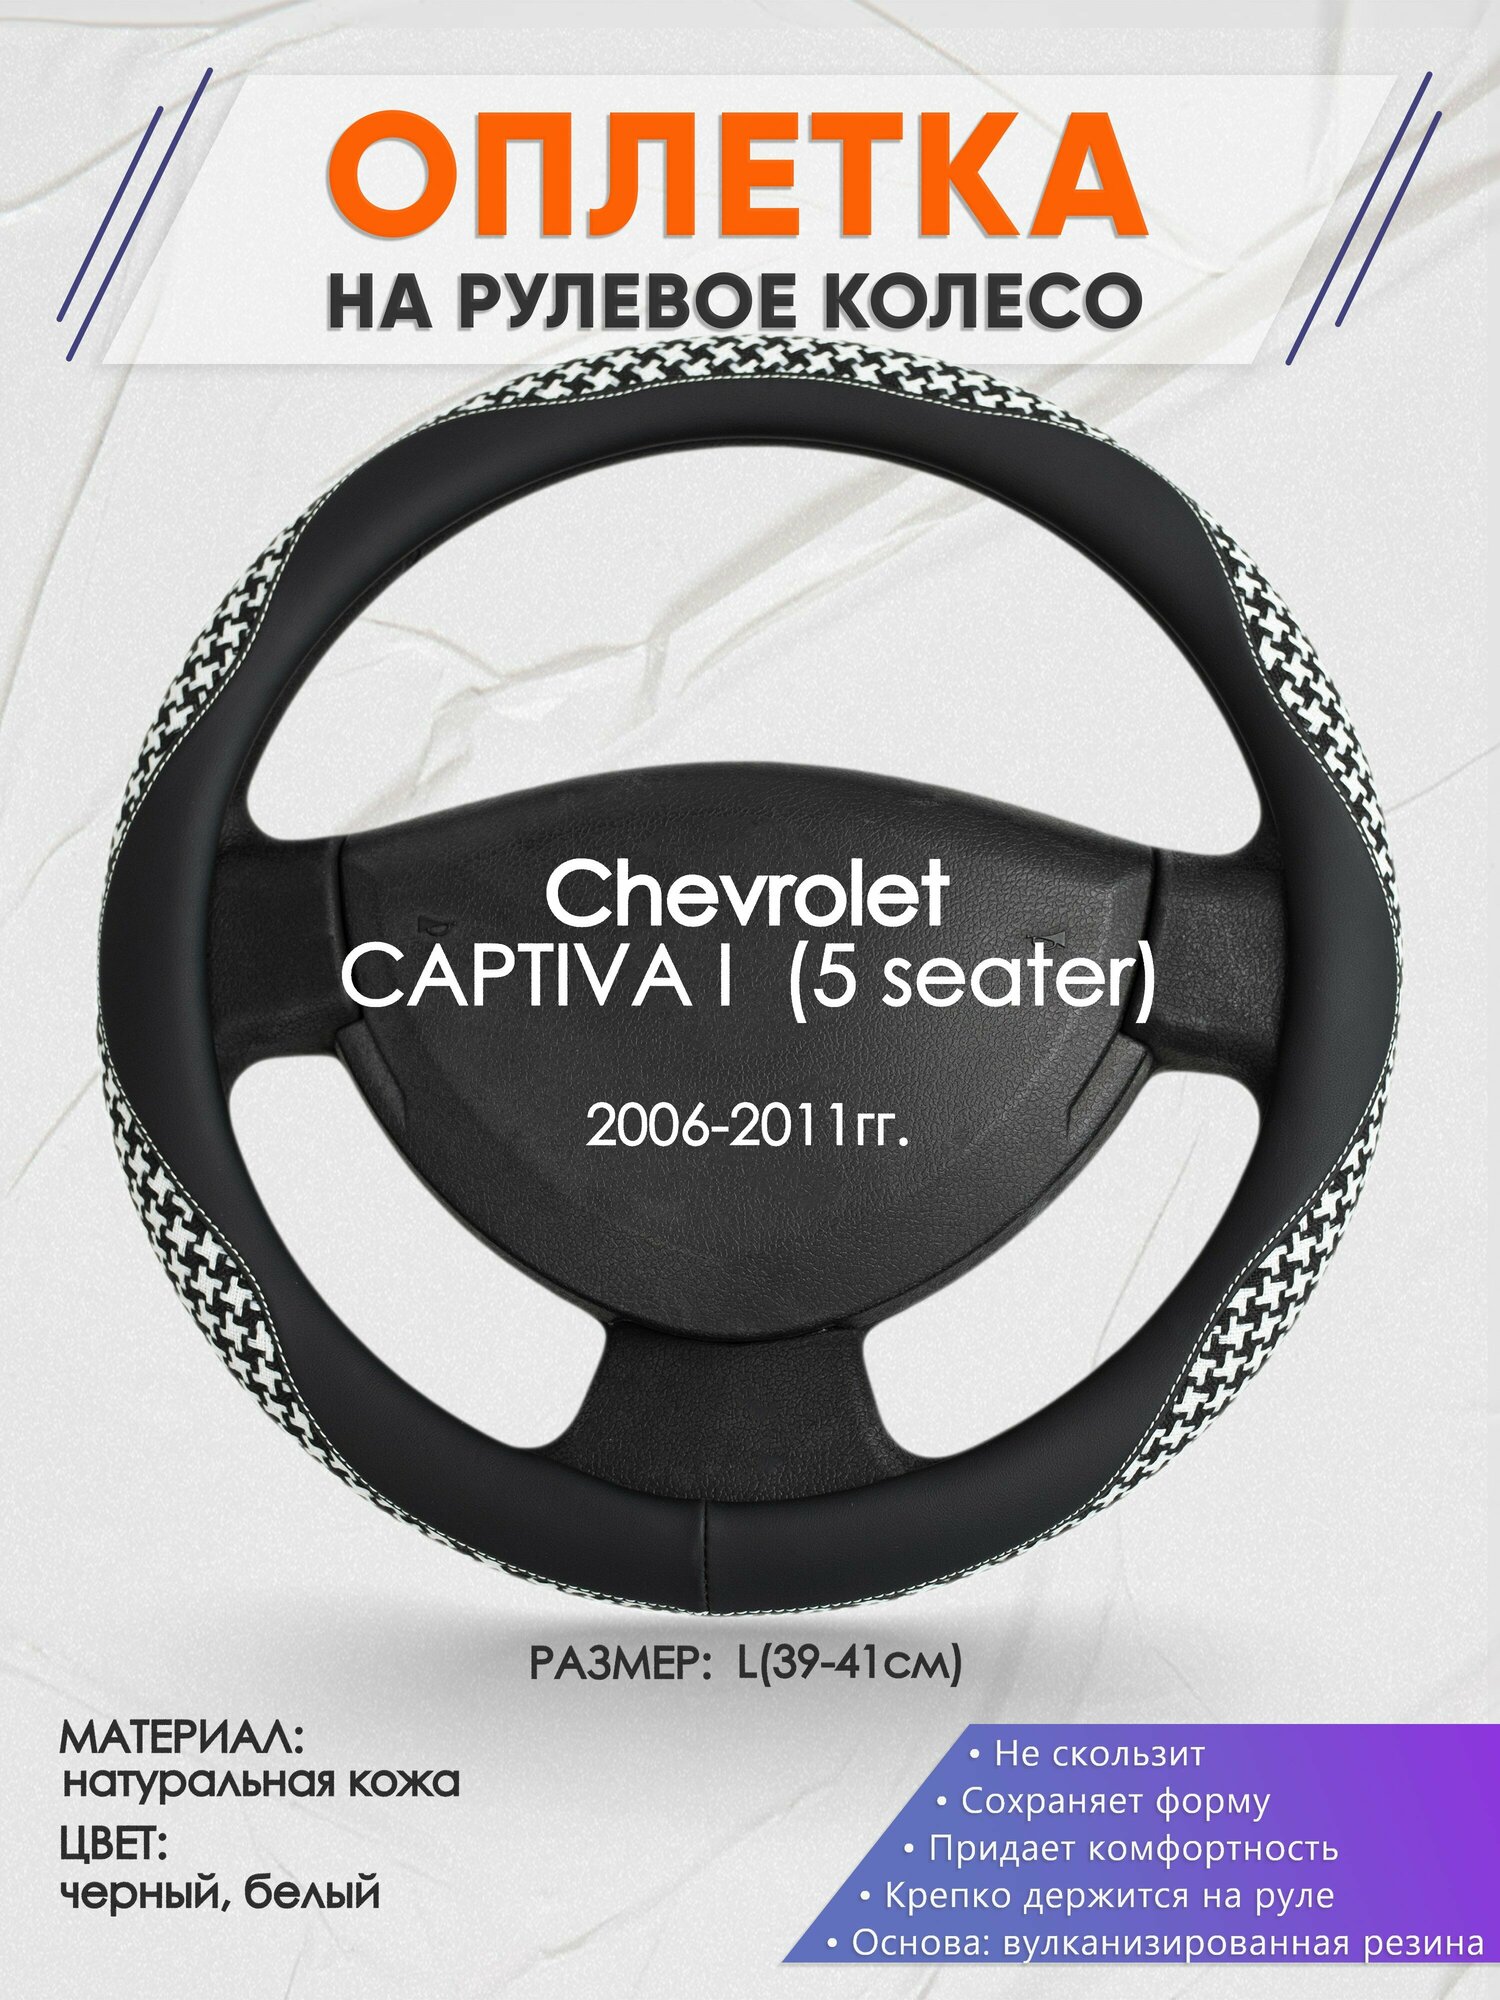 Оплетка на руль для Chevrolet CAPTIVA 1 (5 seater)(Шевроле Каптива) 2006-2011, L(39-41см), Натуральная кожа 21